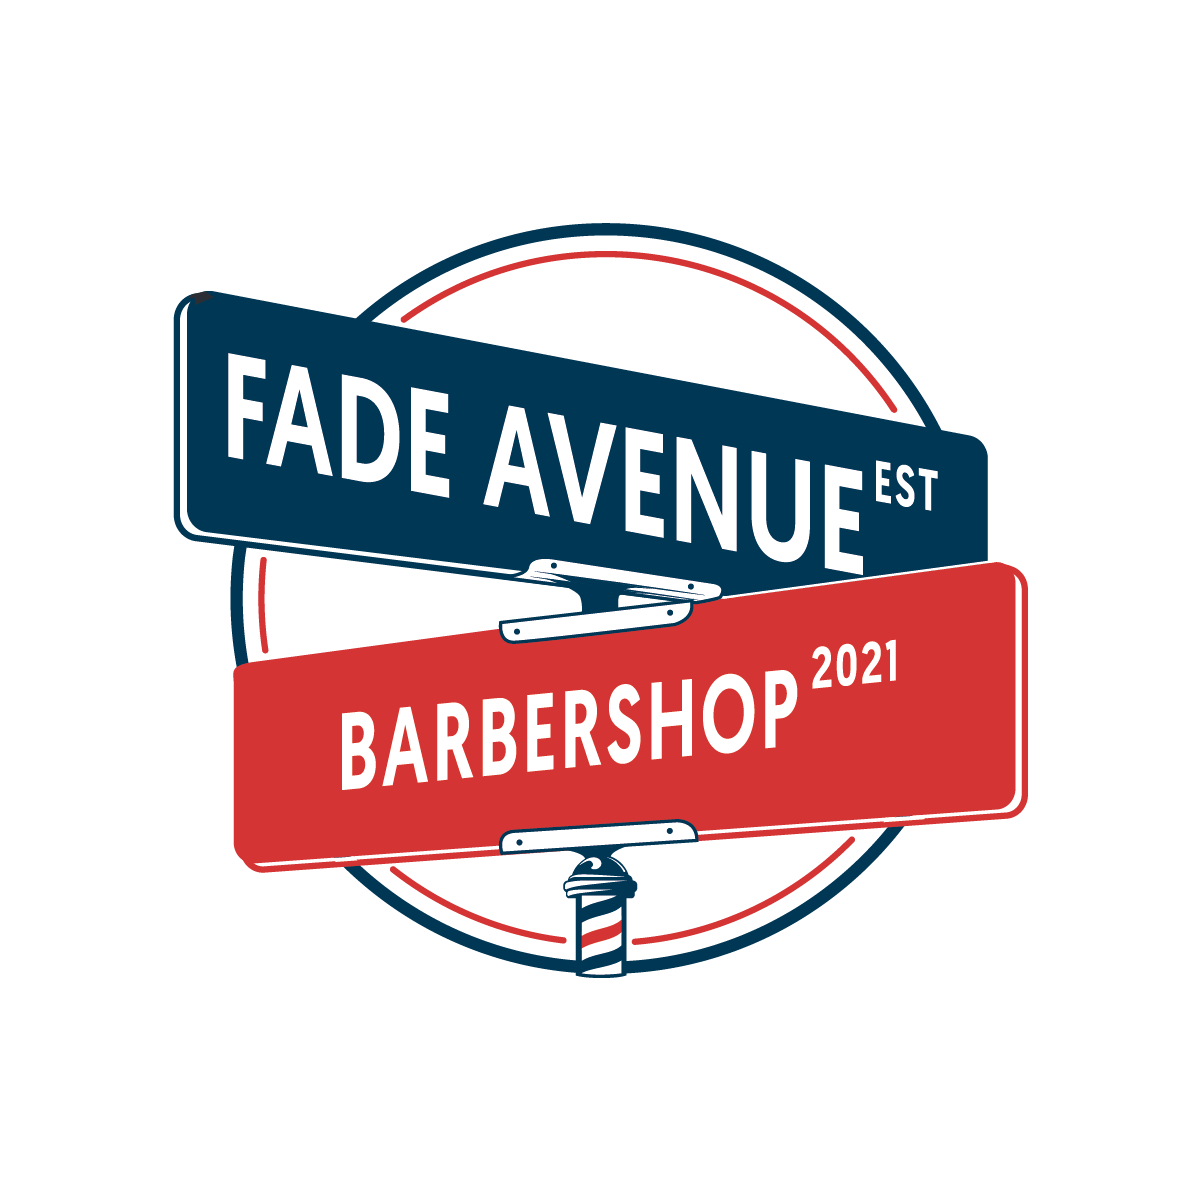 Fade Avenue Barbershop